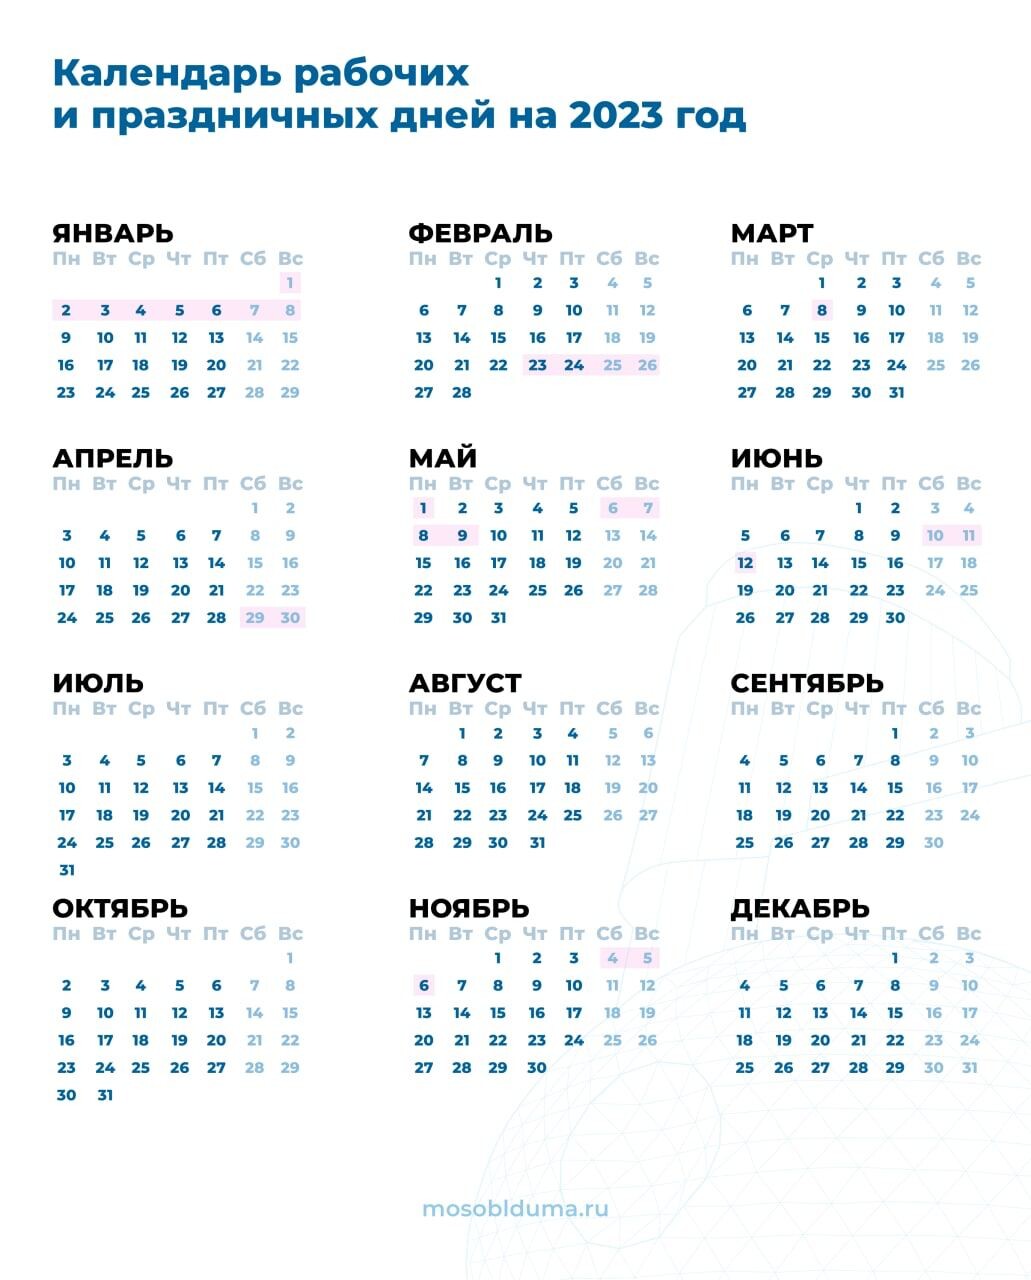 Праздники выходные 2023 году. Праздничные дни в феврале 2023. Праздники в феврале 2023 в России. Праздничные дни в 2023 году в России. Календарь выходных дней в 2023 году.